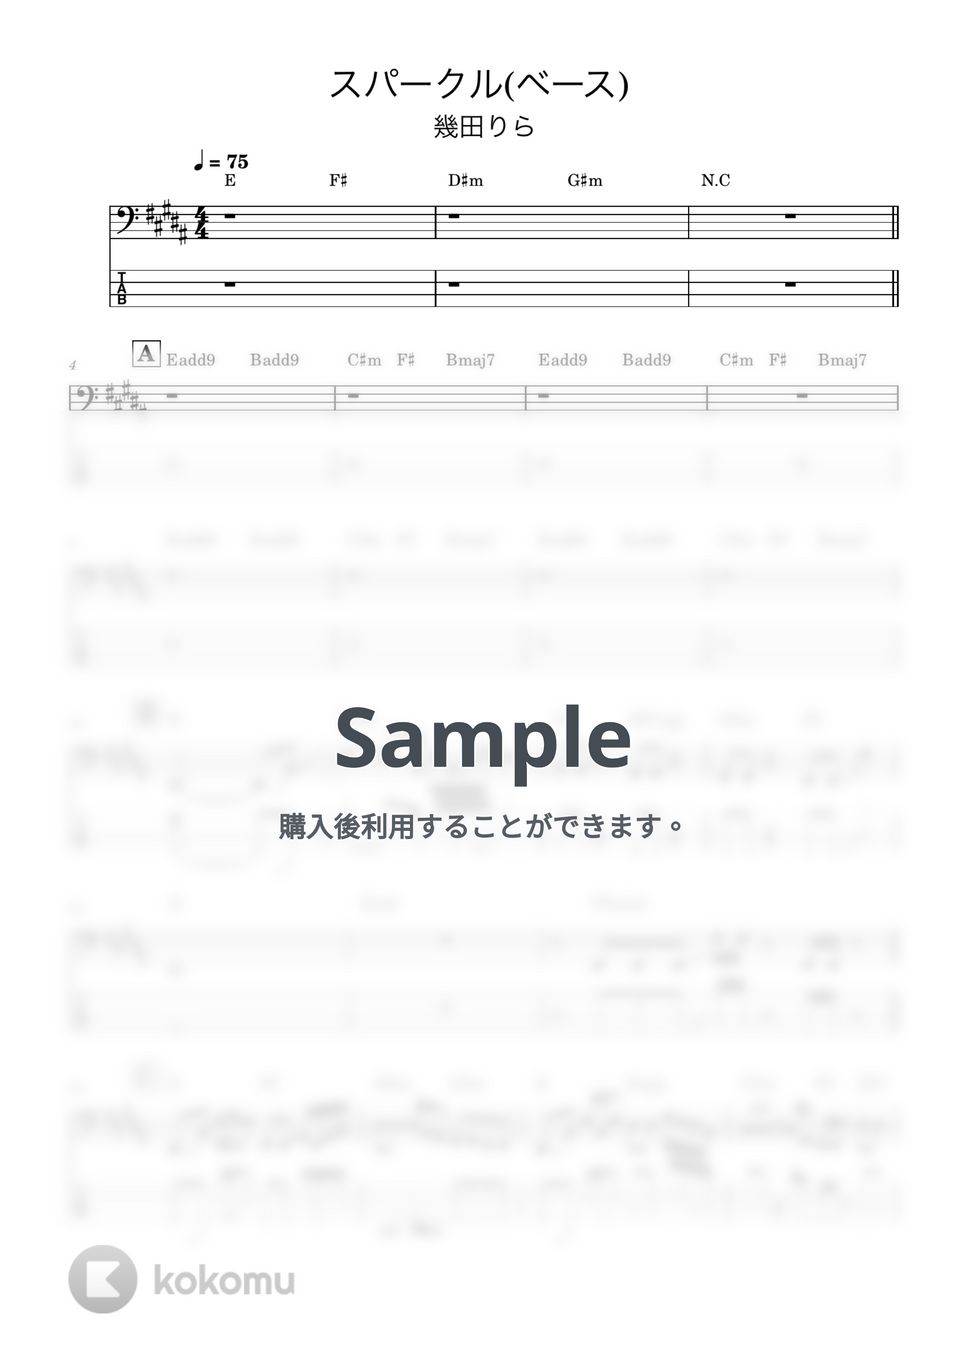 幾田りら - スパークル (恋愛番組『今日、好きになりました。 蜜柑編』主題歌、ベース譜) by Kodai Hojo